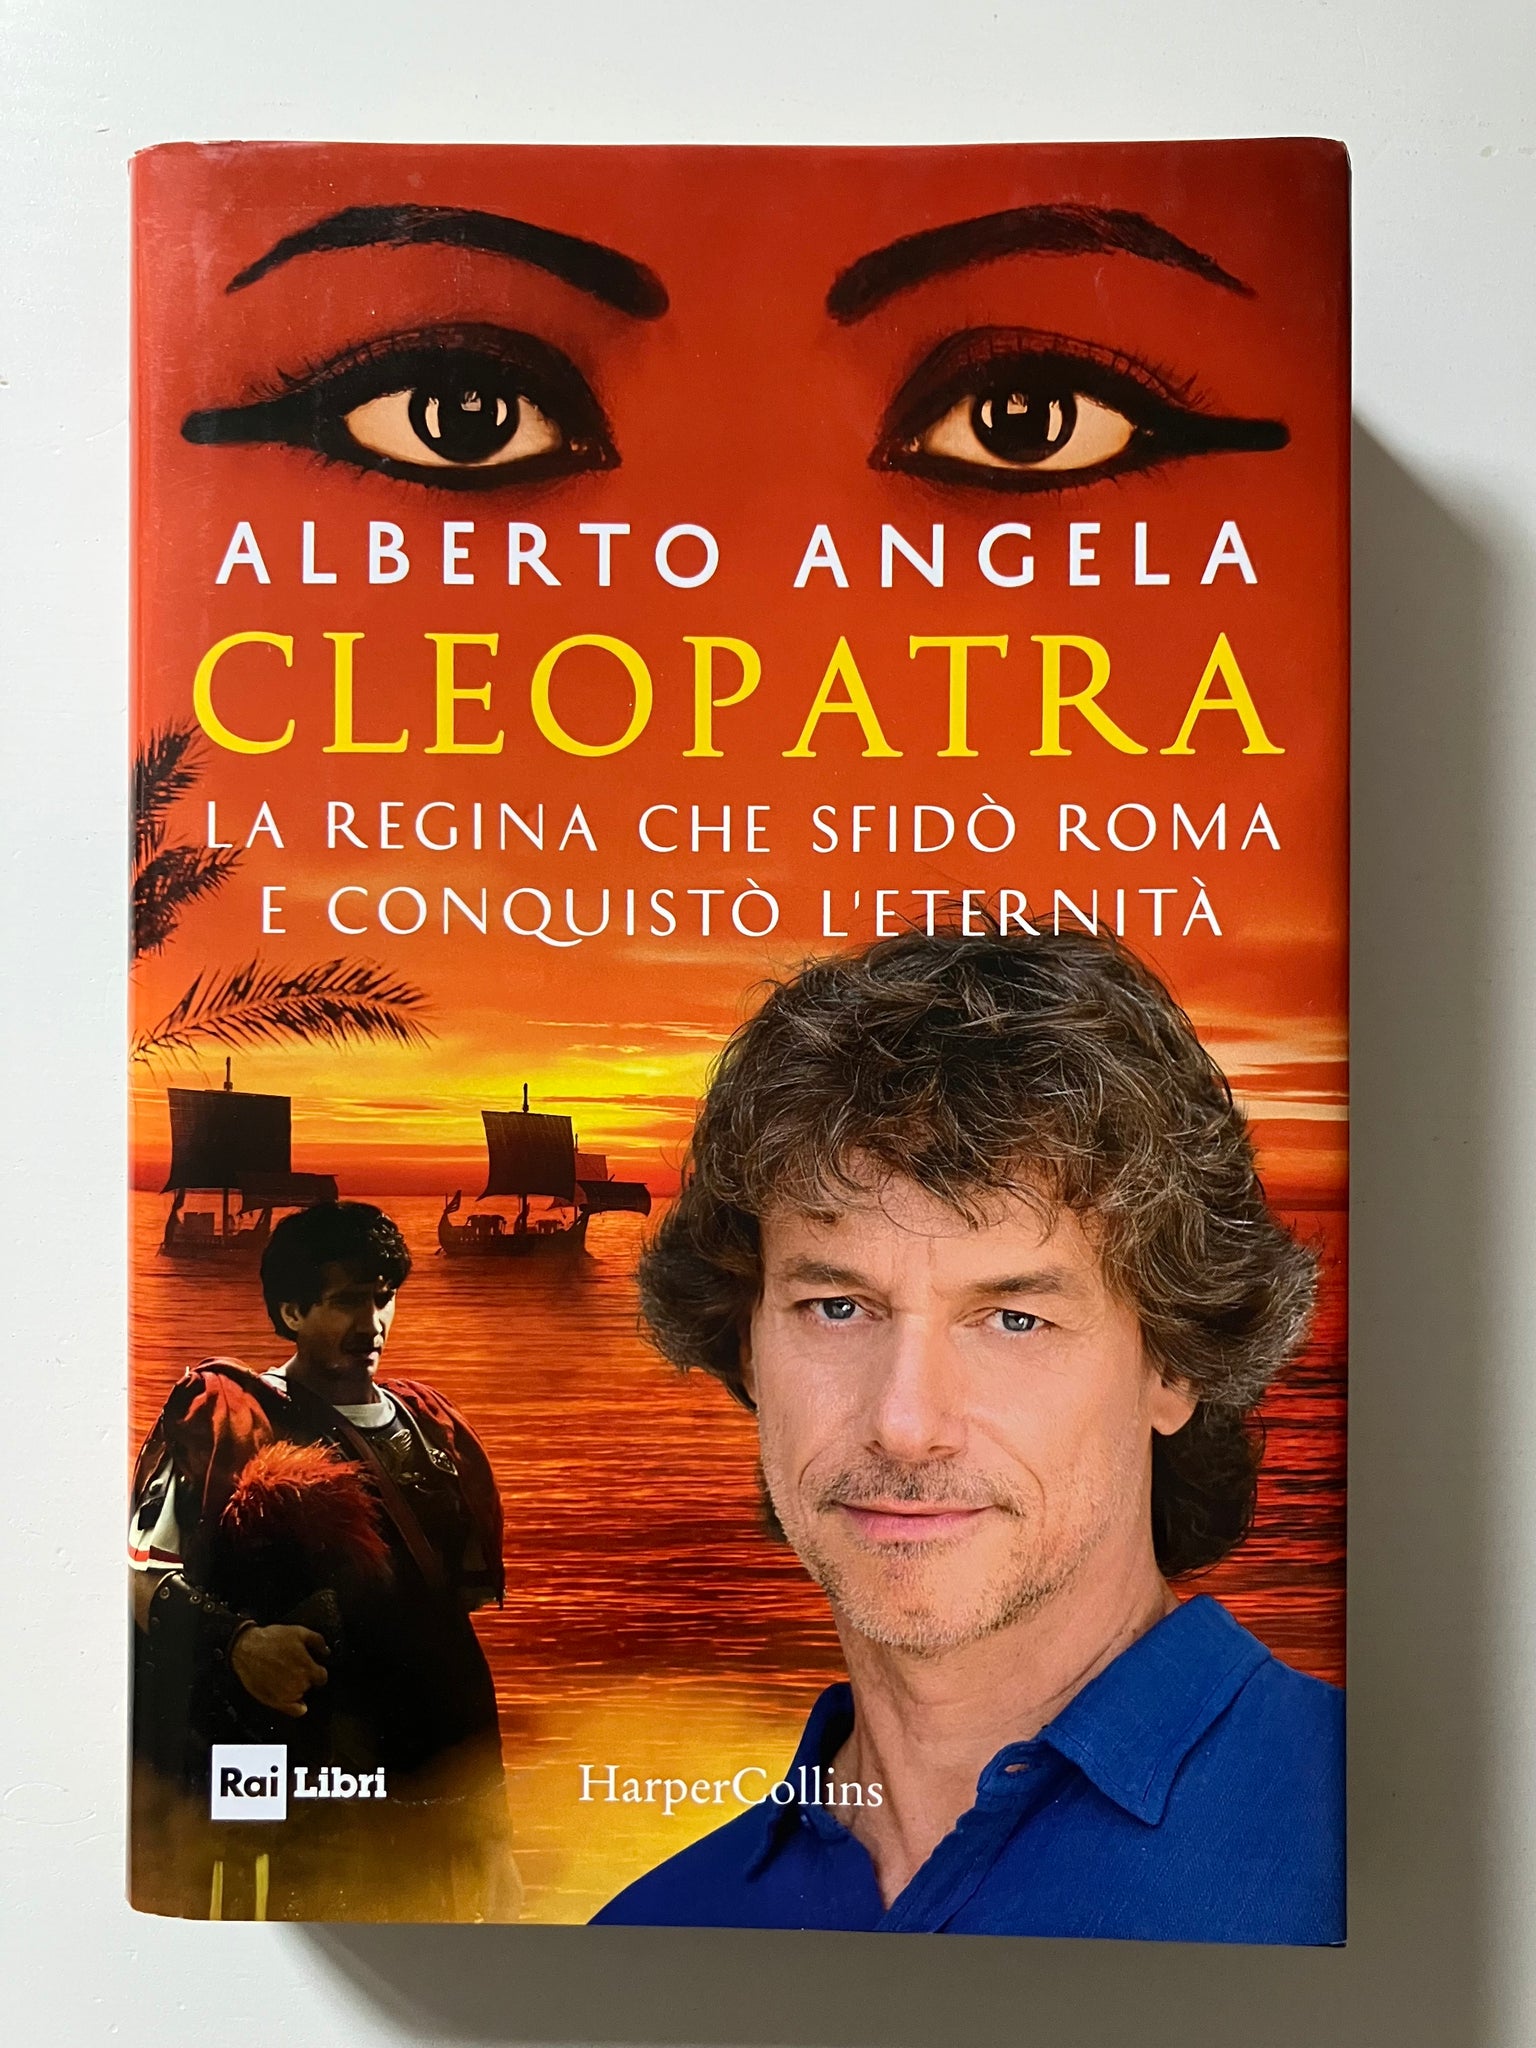 Alberto Angela - Cleopatra La regina che sfidò Roma e conquistò l'eternità